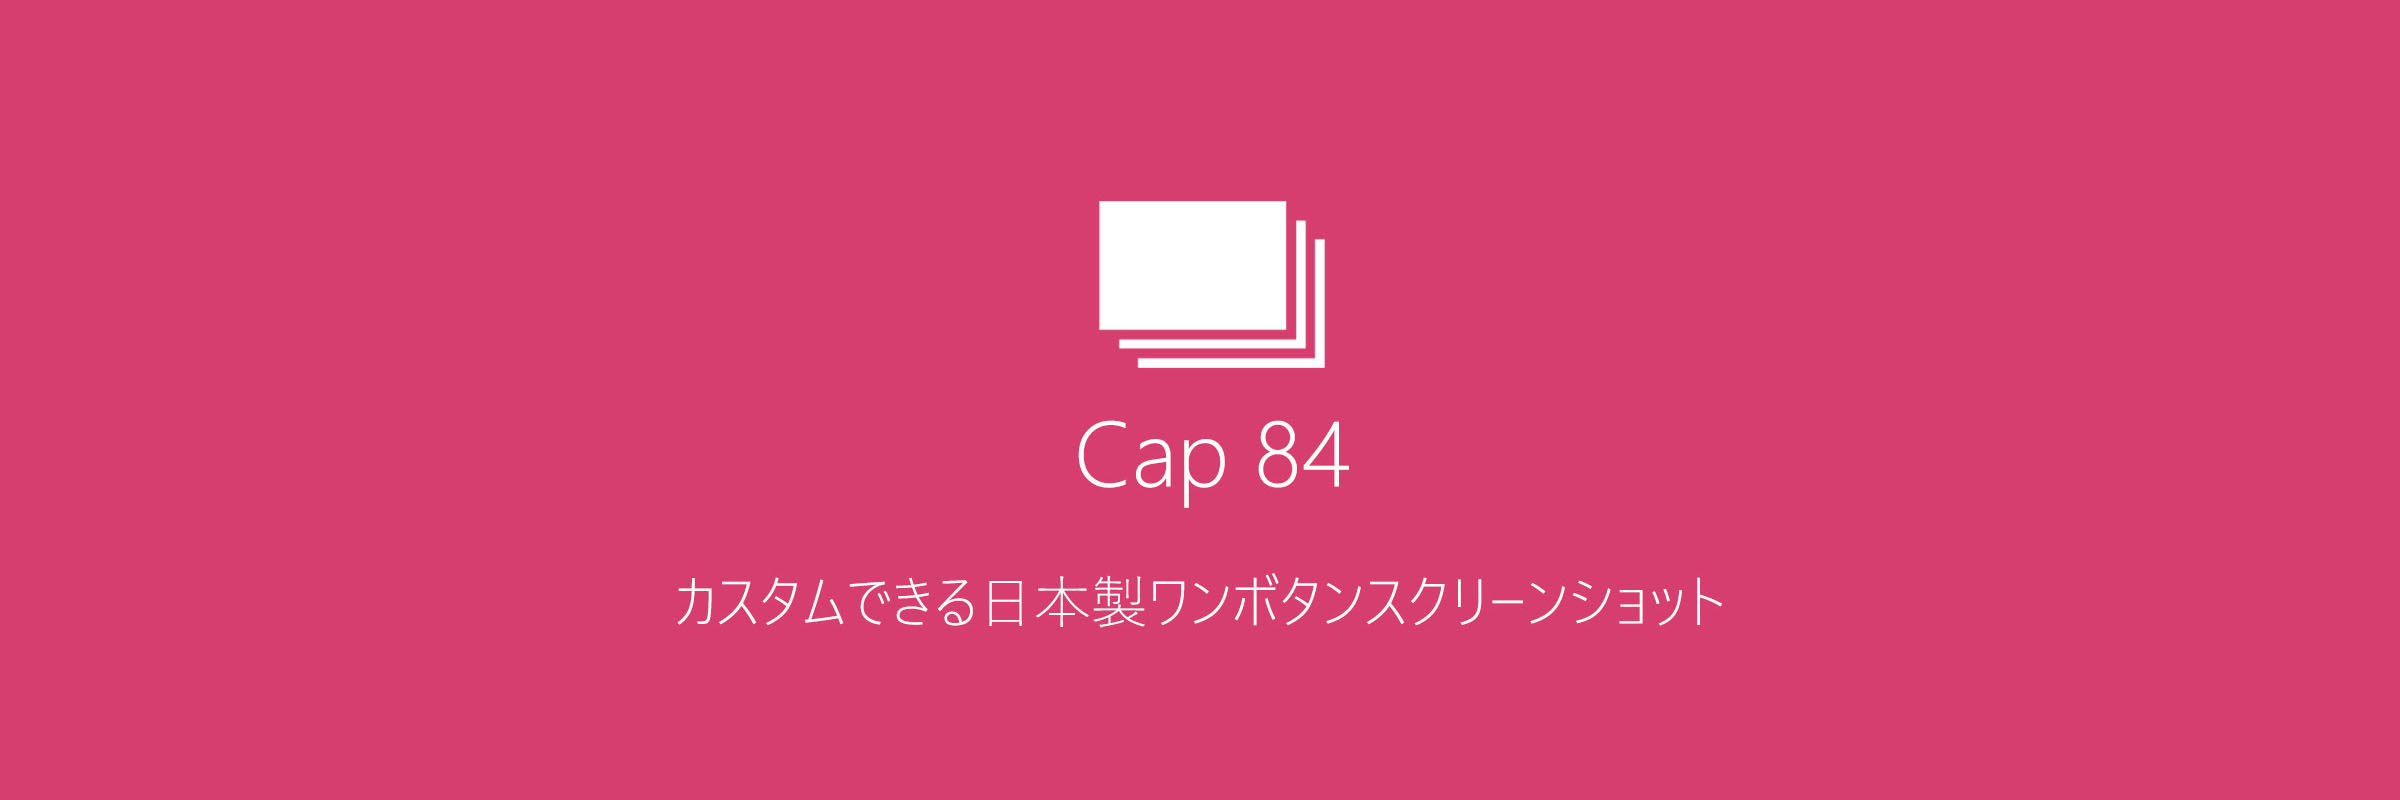 Cap 84 それは 新しいスクリーンショットツール
